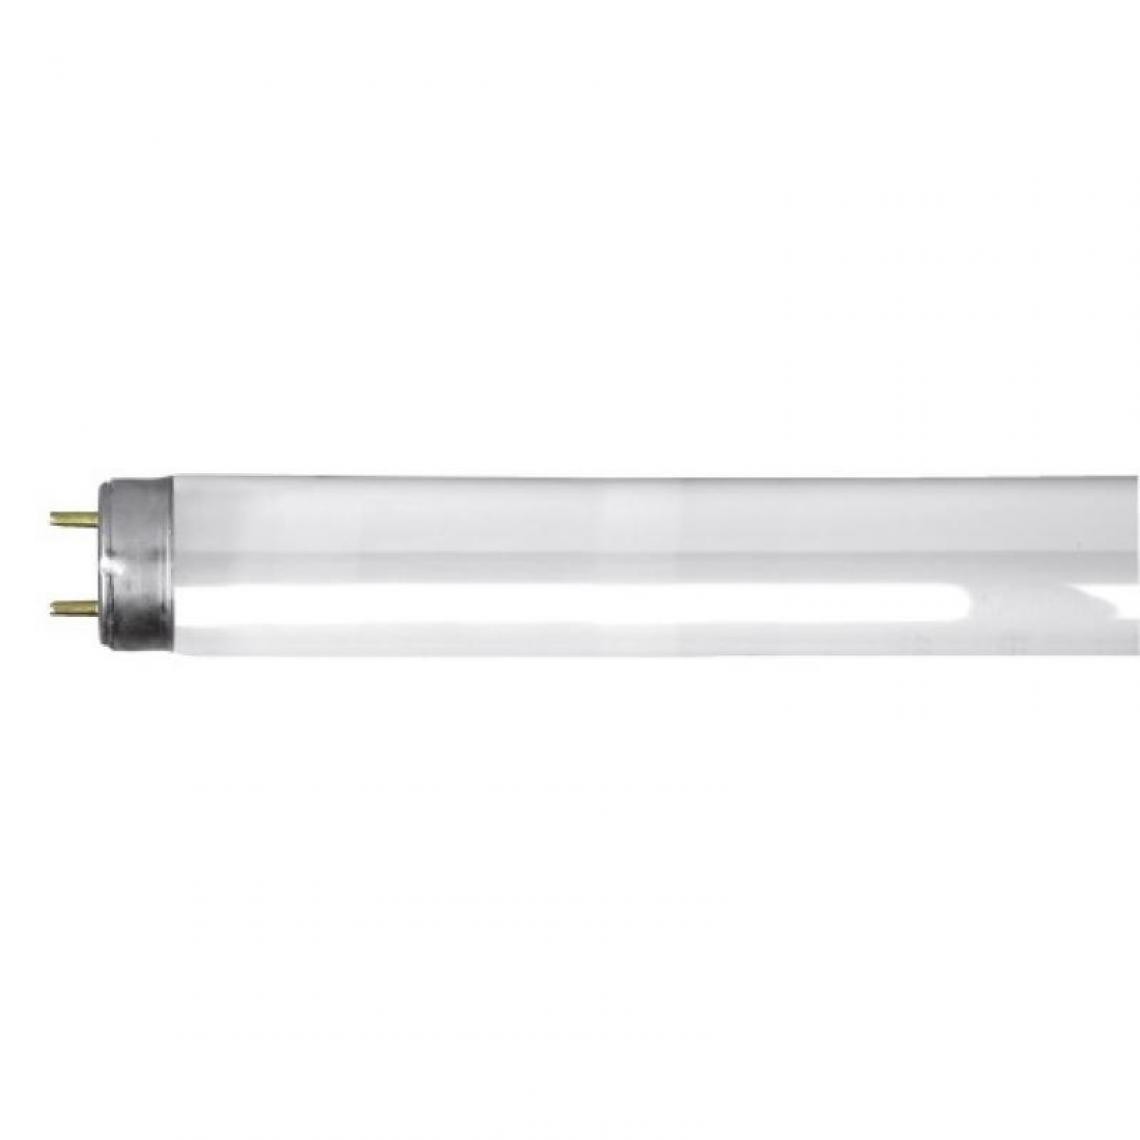 Ge Lighting - Tubes fluorescent T8 standard 58W 3000k par 25 pièces - Ampoules LED